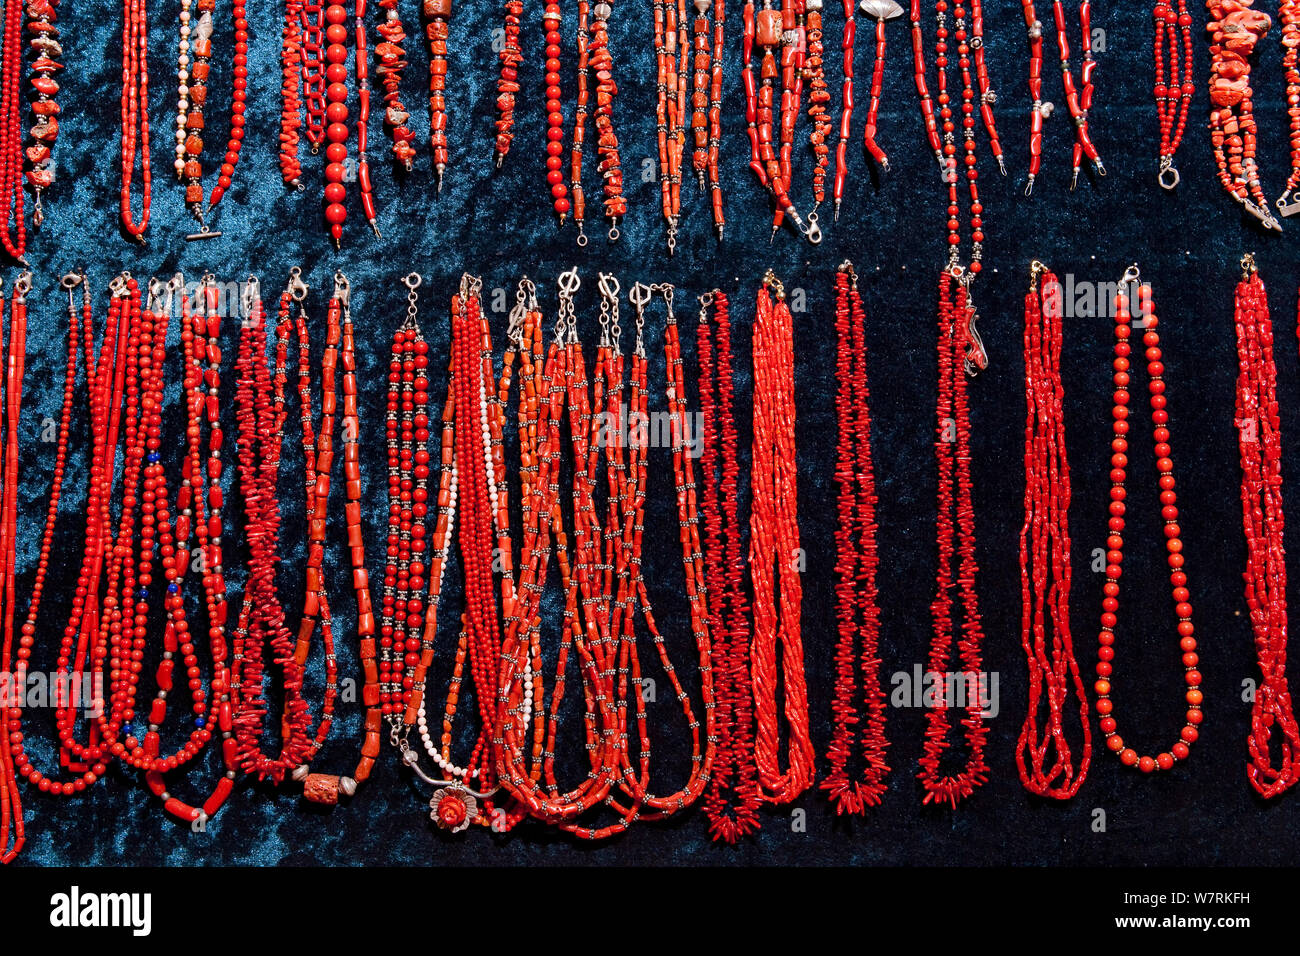 Colliers réalisés à partir de la Méditerranée, le corail rouge (Corallium rubrum), vulnérables (UICN), Village de Komisa, l''île de Vis, Croatie, Mer Adriatique, Mer Méditerranée Banque D'Images